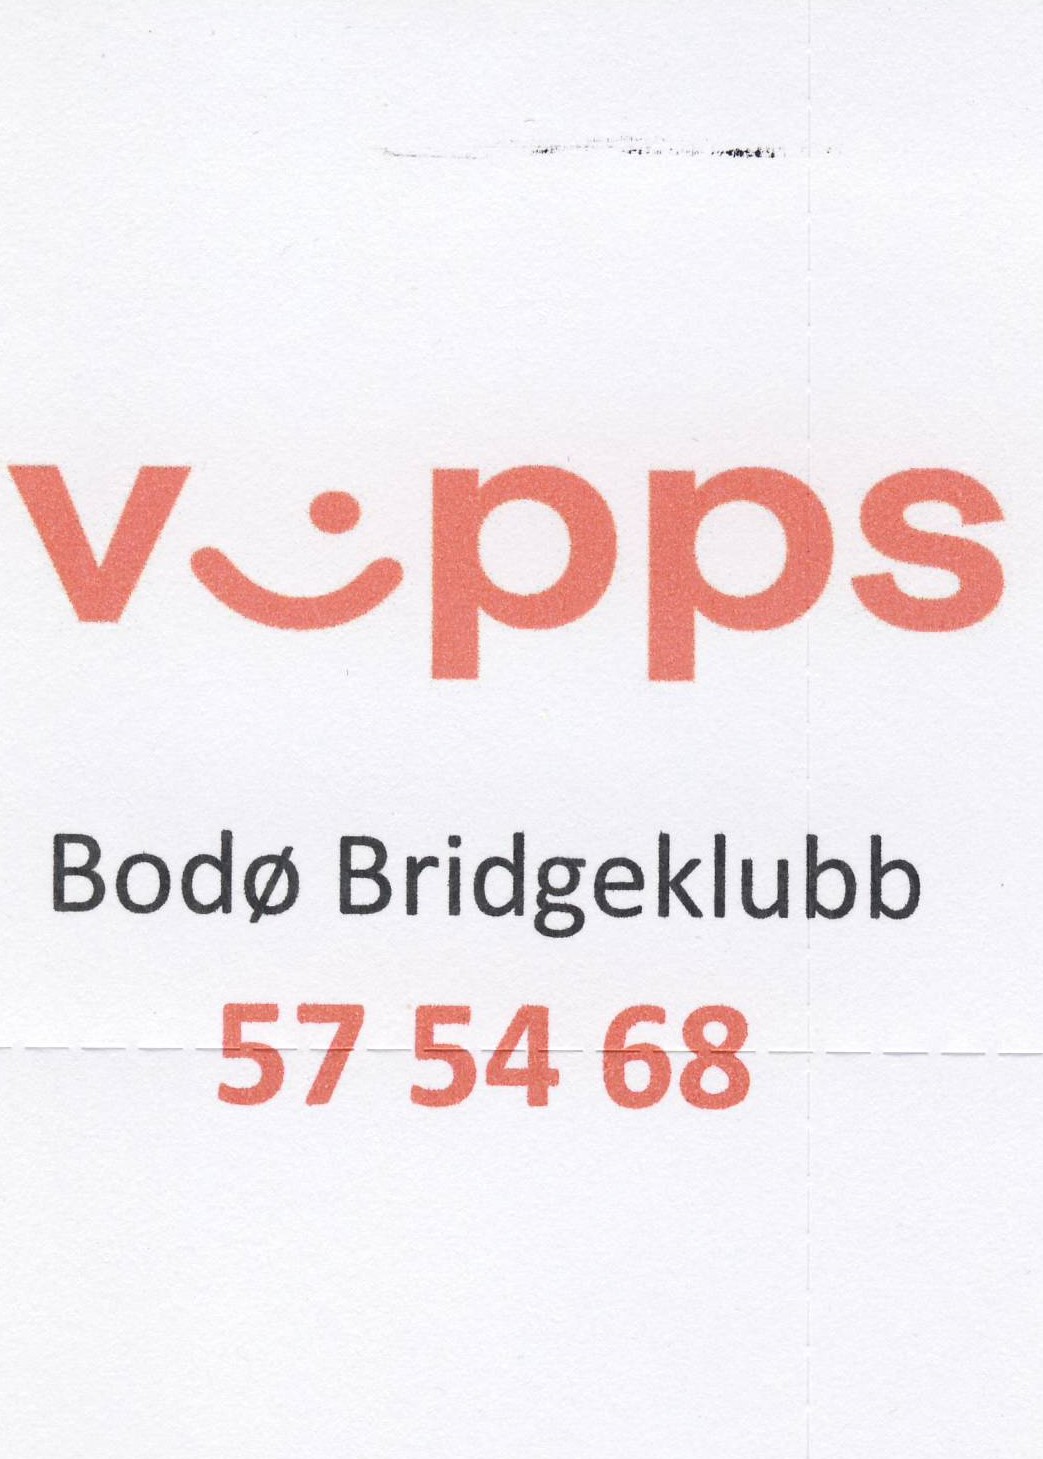 Bodø bridgeklubb har fått Vipps